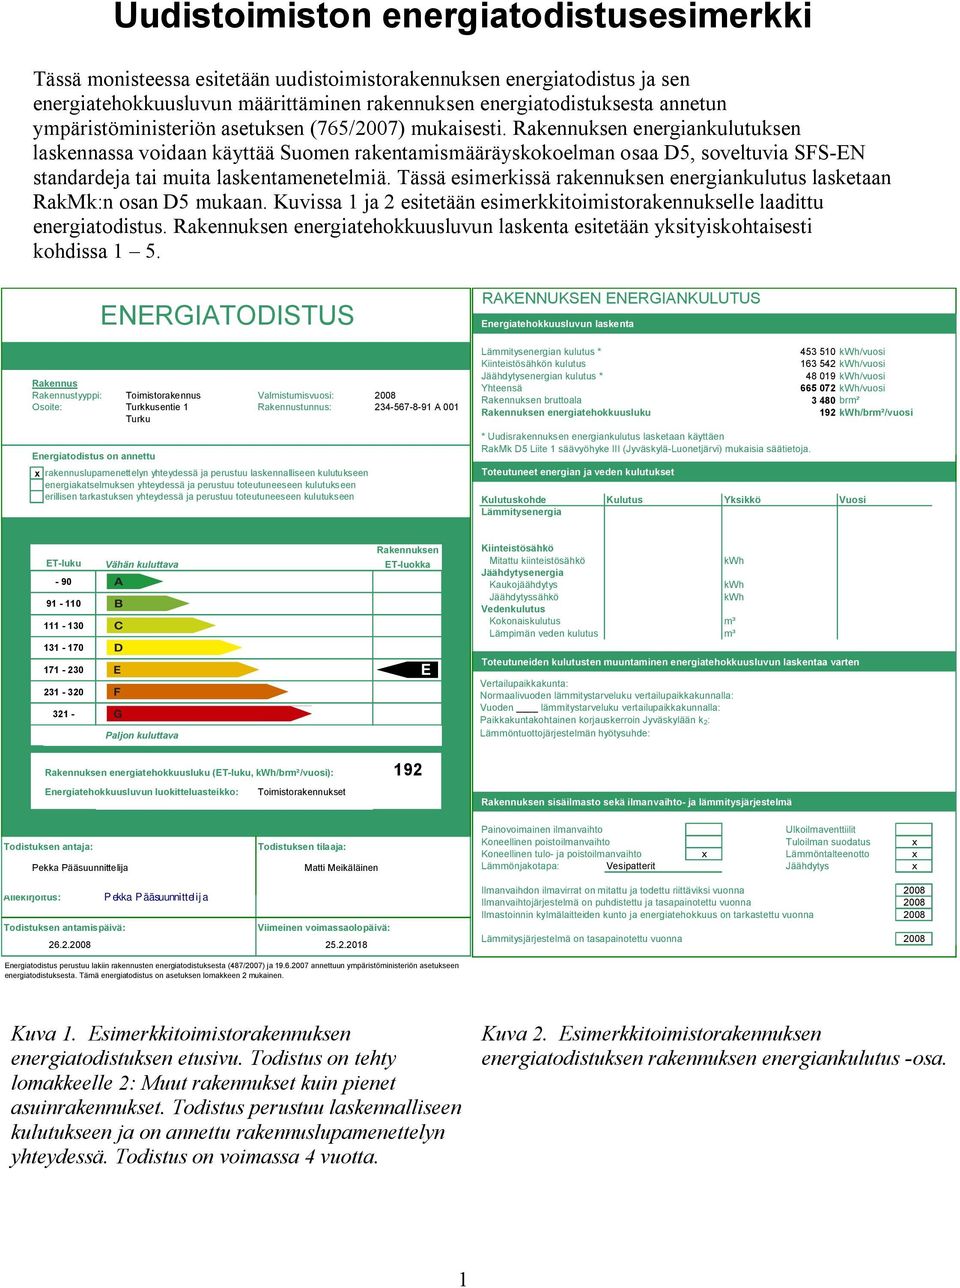 energiankulutuksen laskennassa voidaan käyttää Suomen rakentamismääräyskokoelman osaa D5, soveltuvia SFS EN standardeja tai muita laskentamenetelmiä.